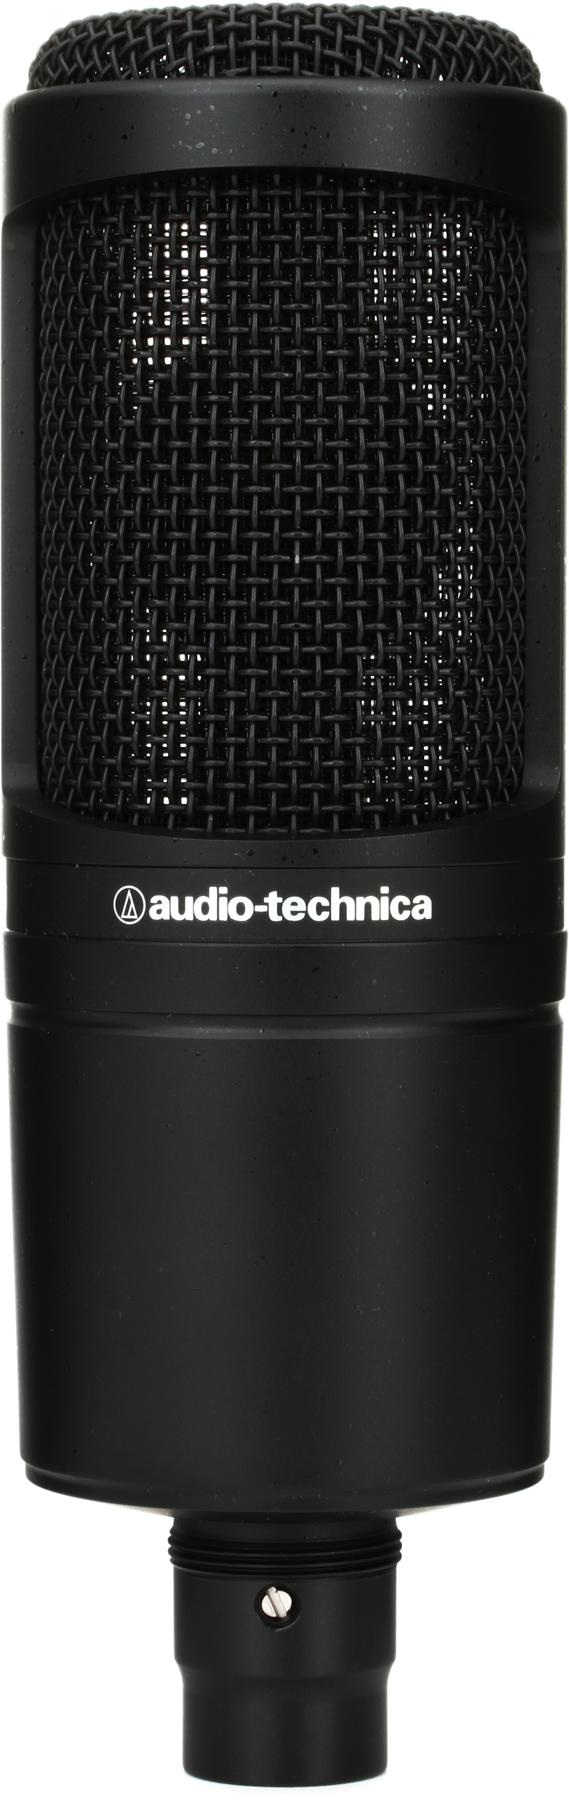 4. Audio-Technica AT2020